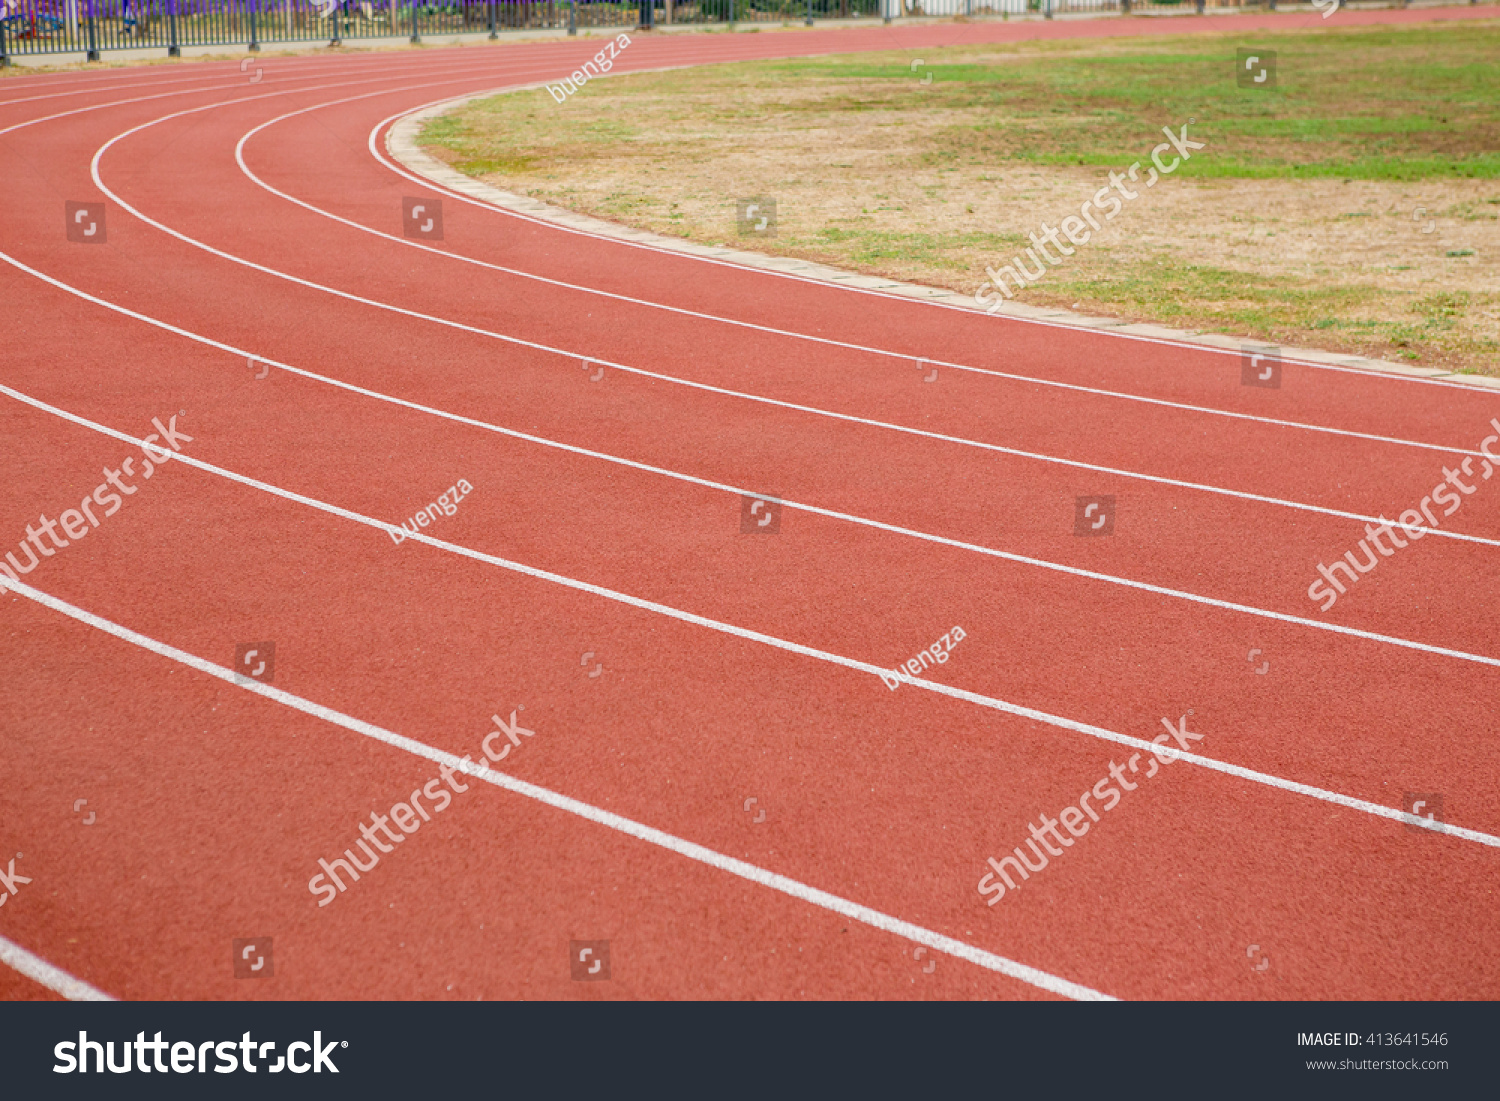 Running track in stadium #413641546